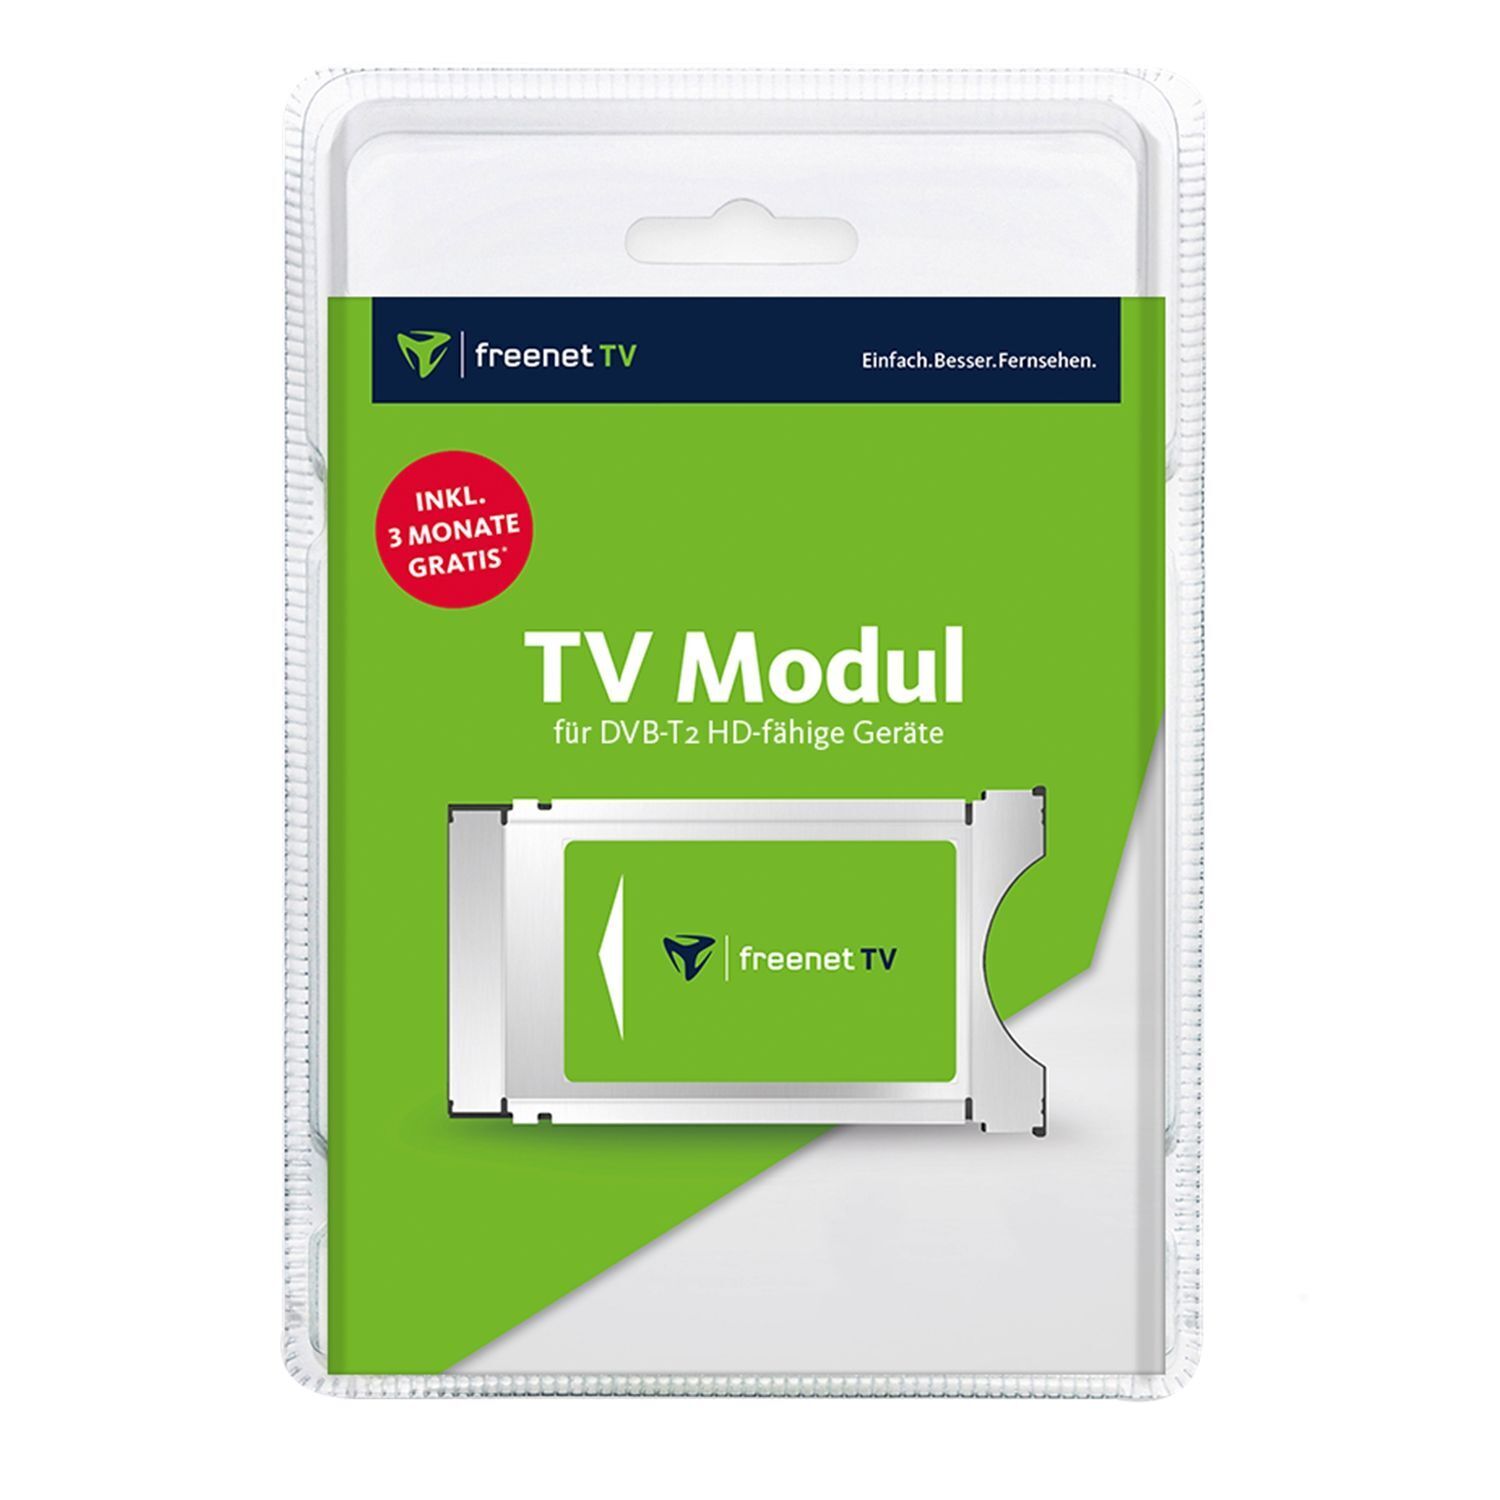 CI TV Modul von freenet TV für DVB-T2 Antenne inkl. 3 Monate gratis¹ HDTV HD 